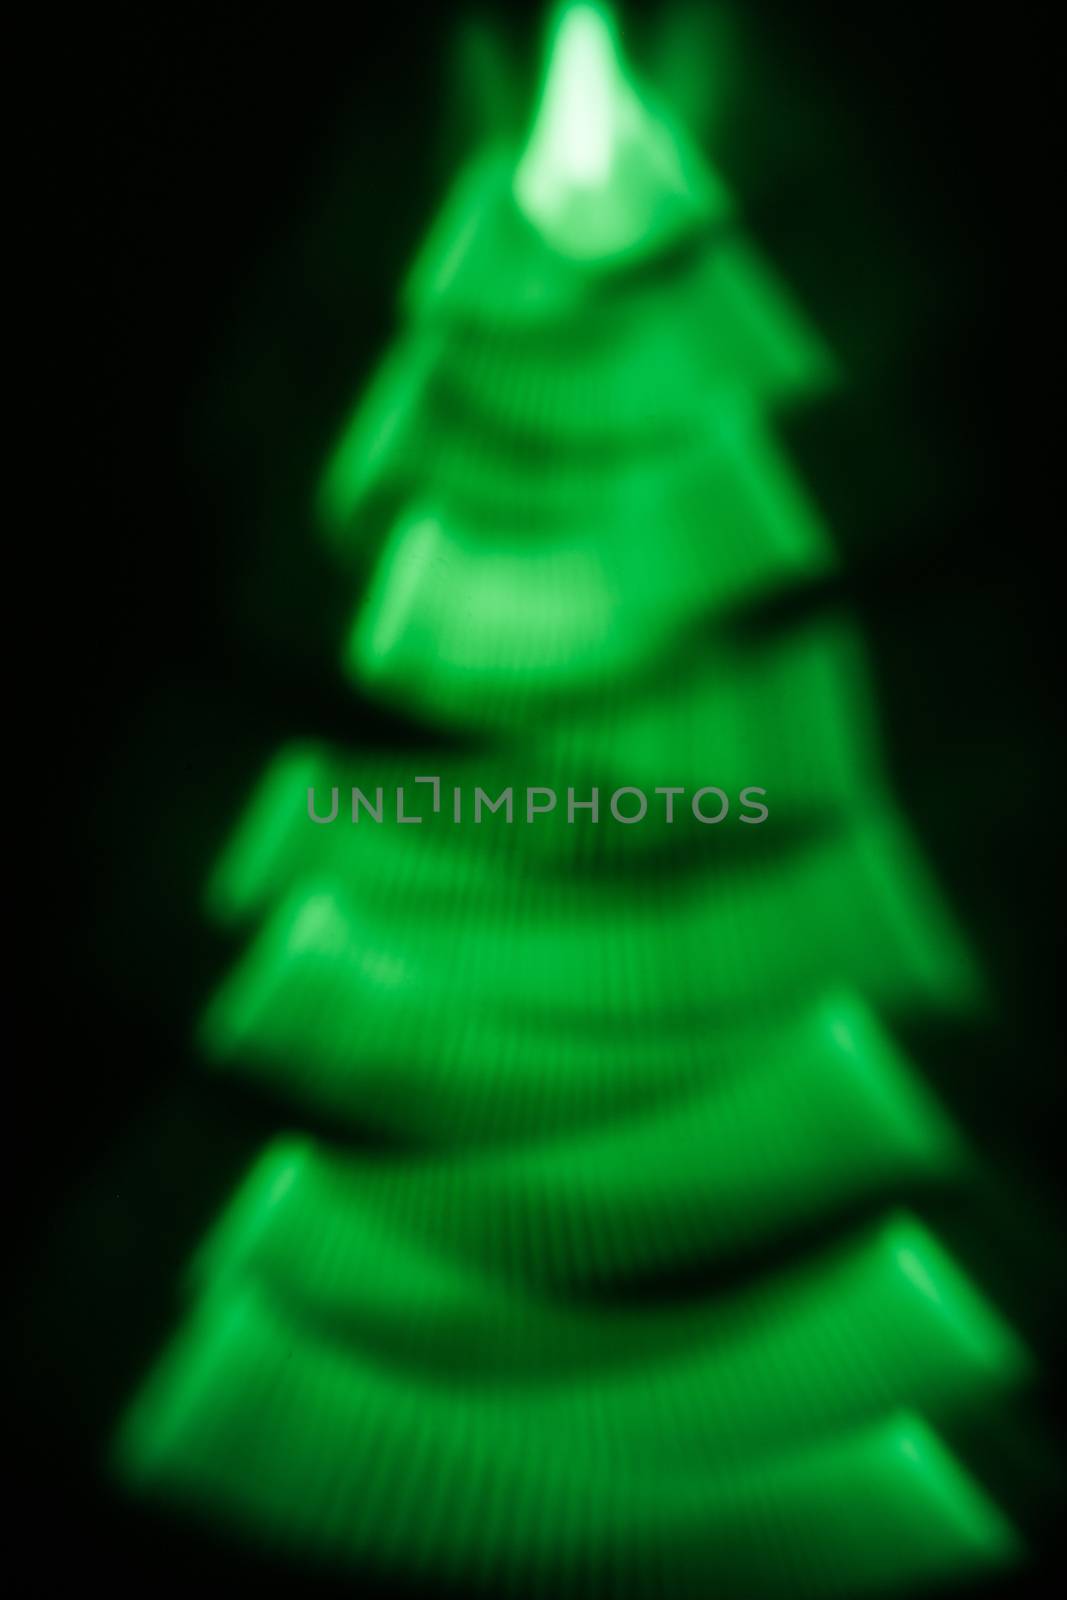 green fir shaped texture by agg